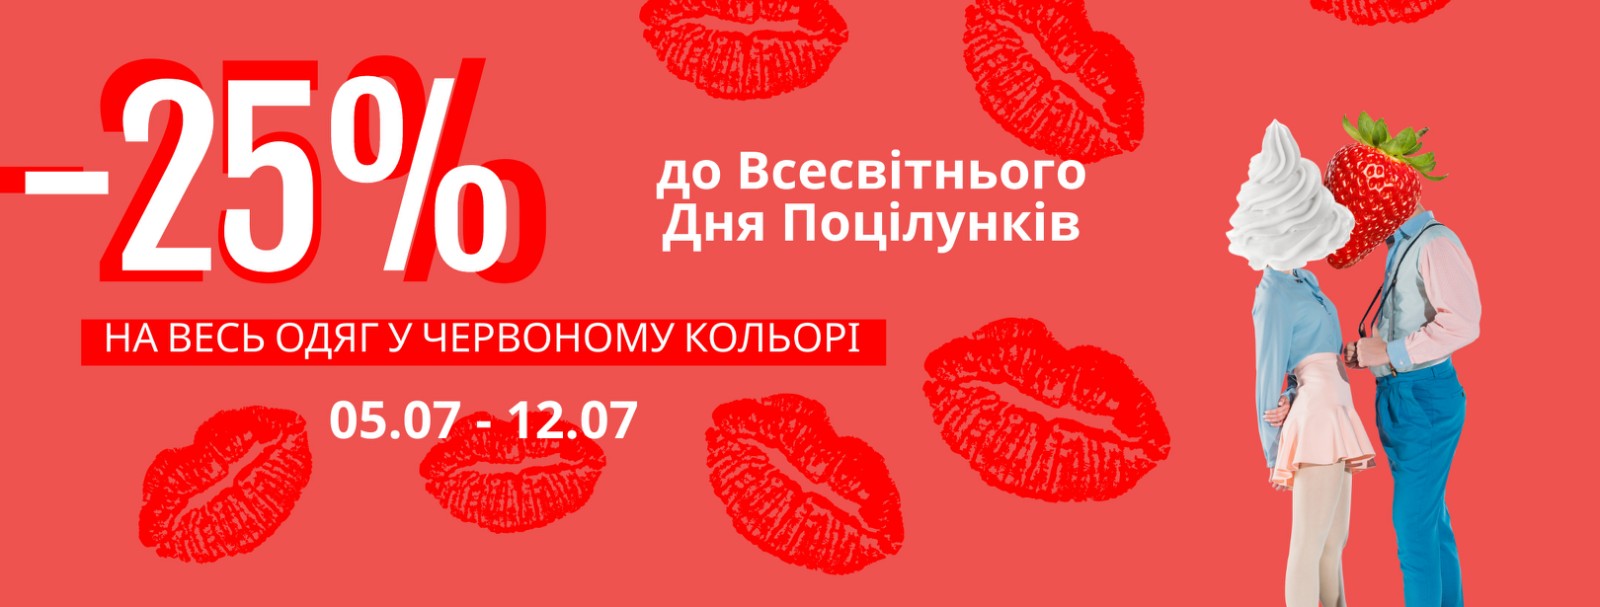 До Всесвітнього Дня Поцілунків // -25% на весь одяг у червоному кольорі